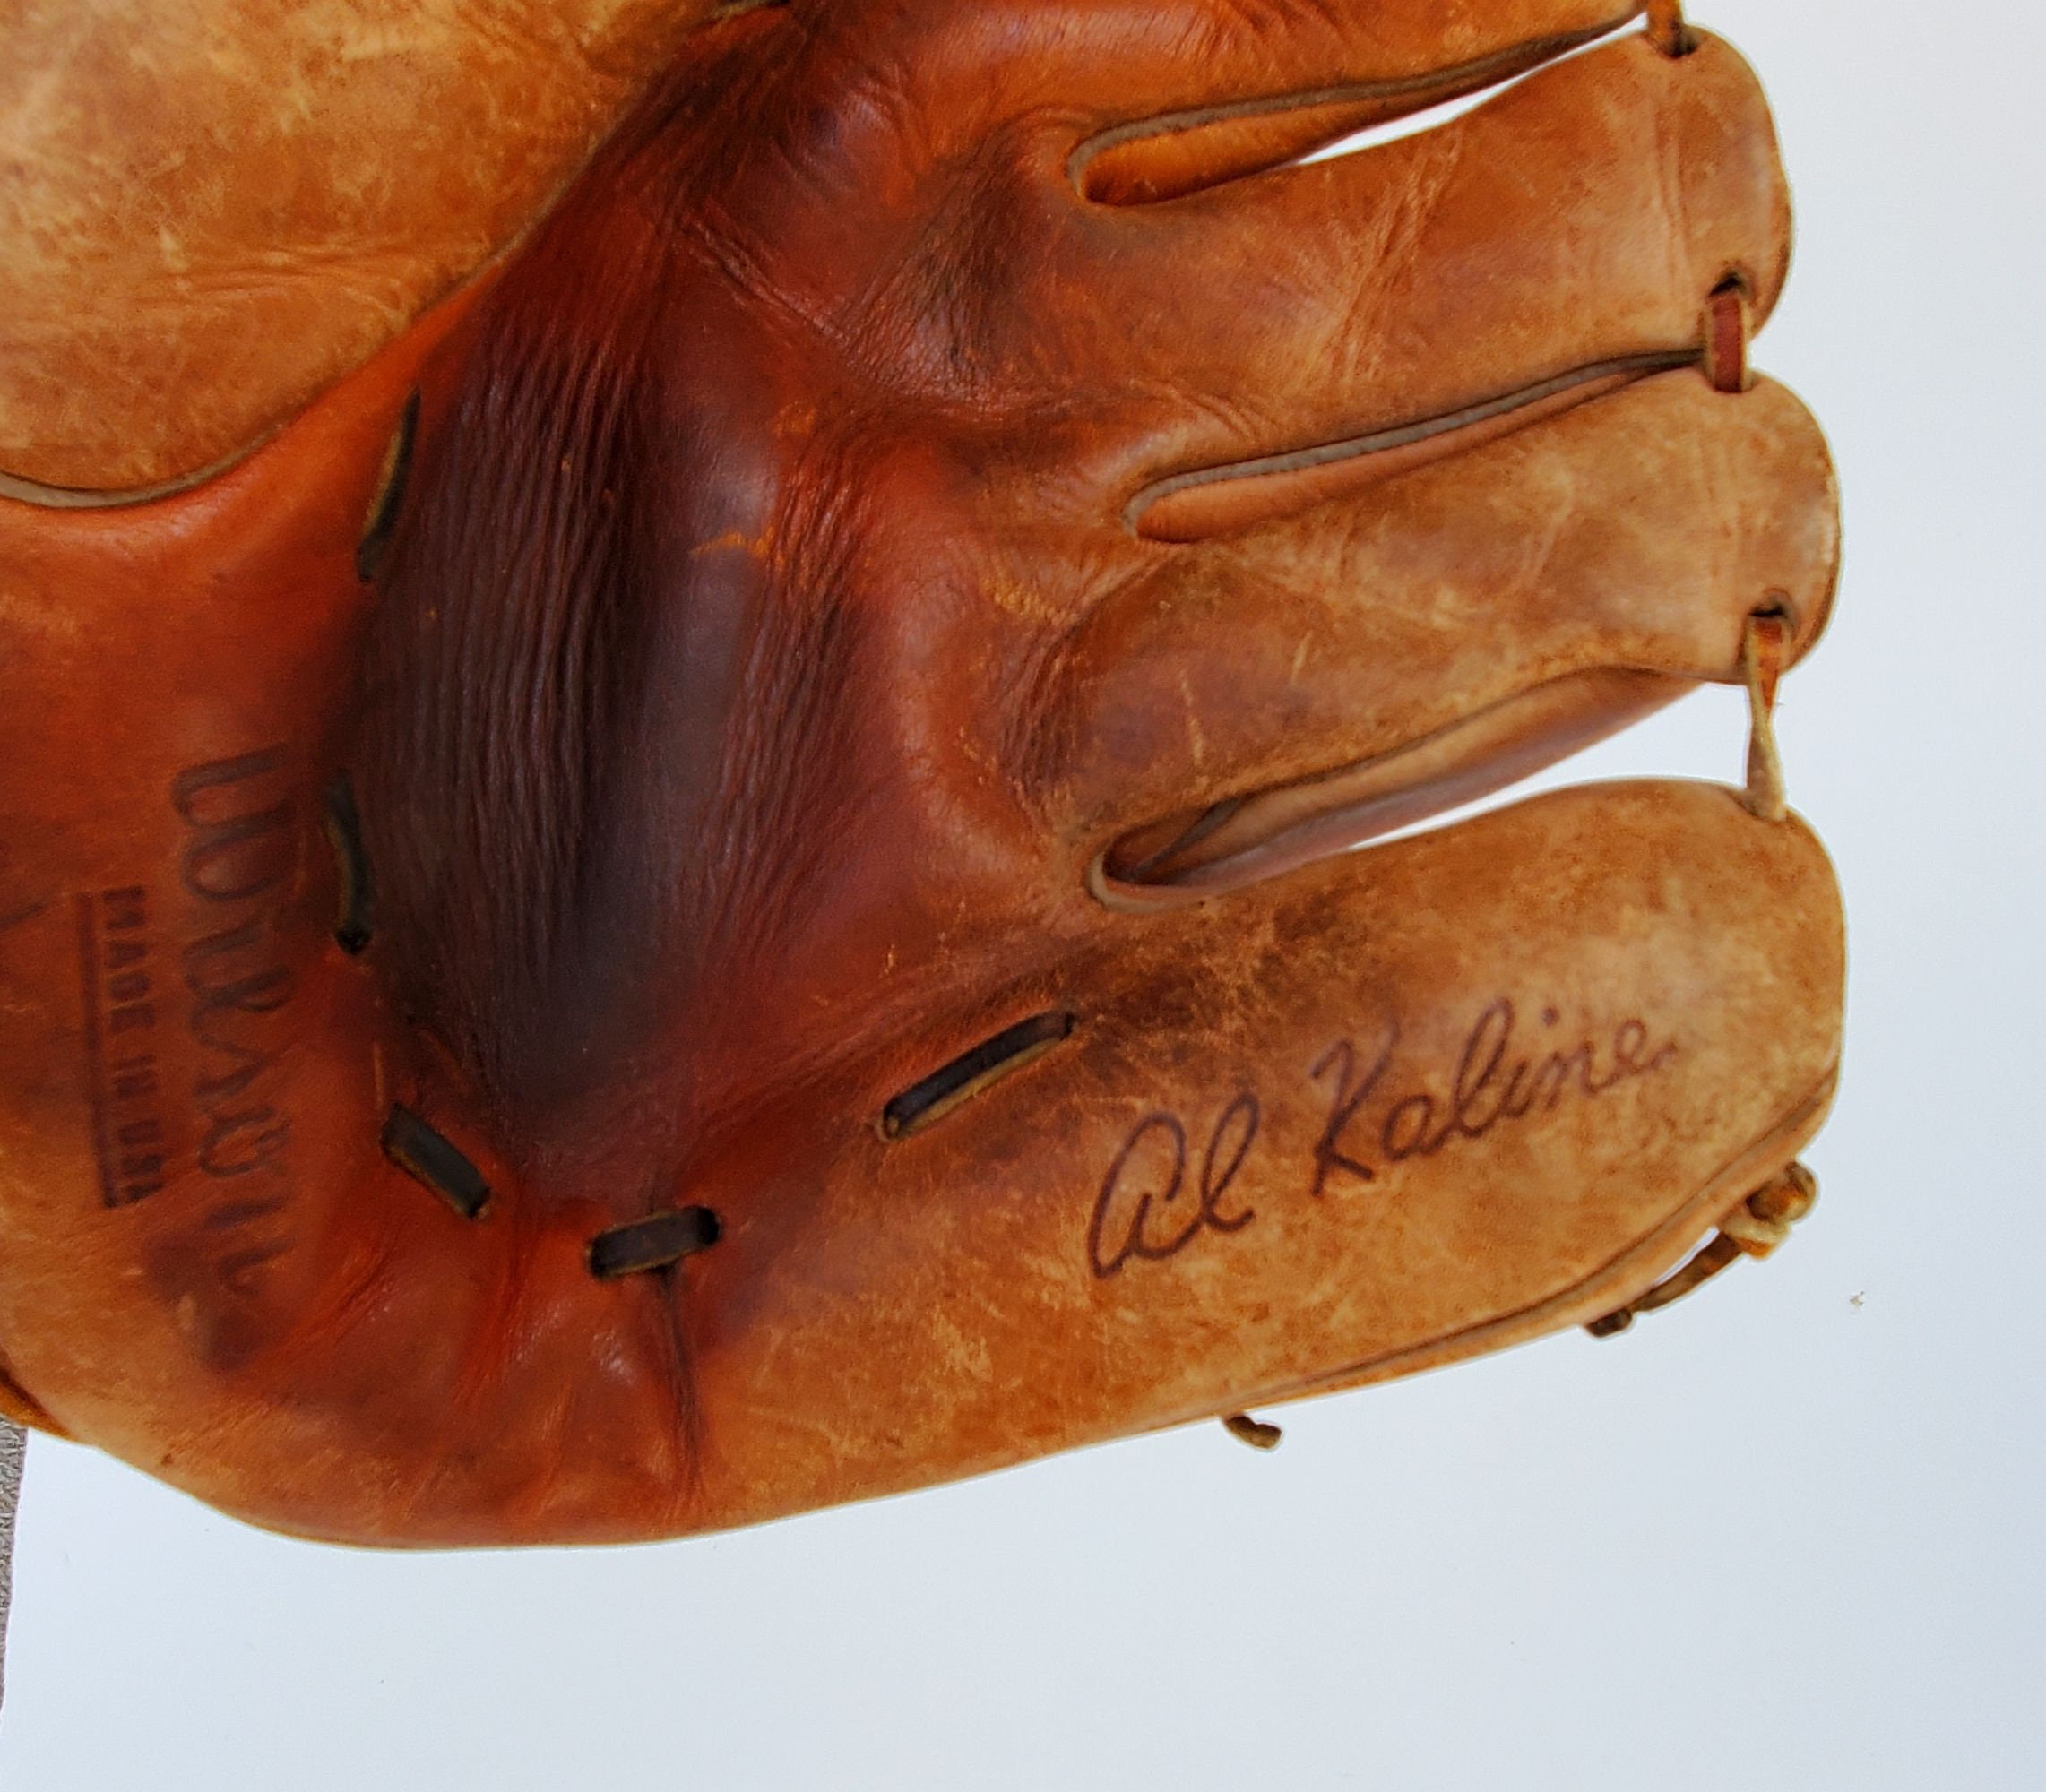 Vintage Al Kaline Leather Baseball Glove SK 11 Model 